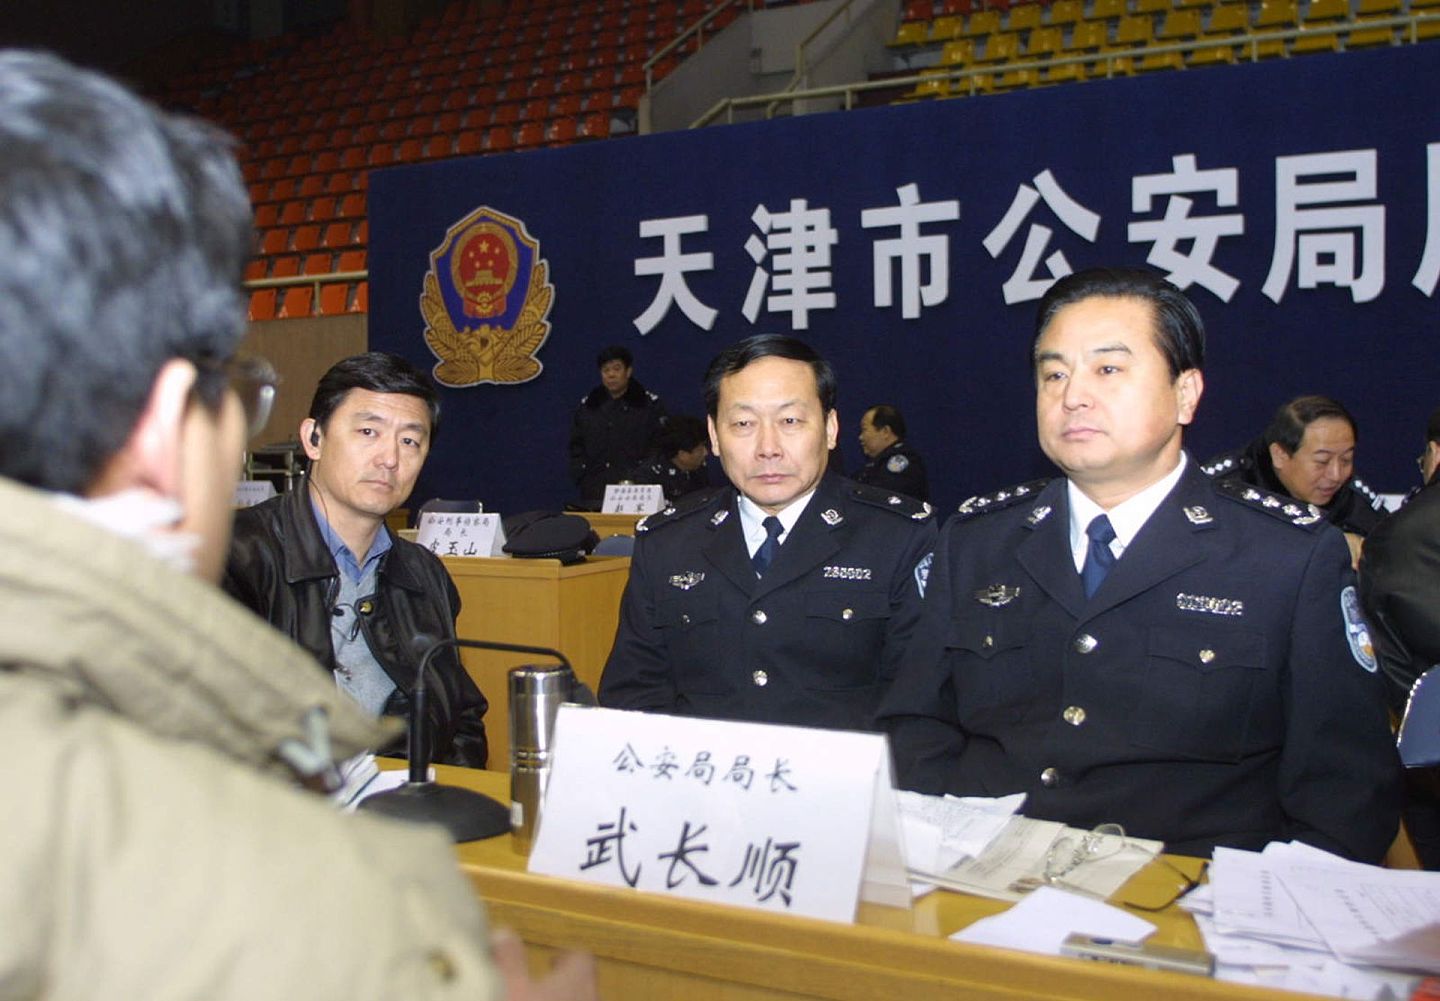 2003年12月20日，时任天津市公安局局长的武长顺现身和反映问题的群众面对面。（视觉中国）